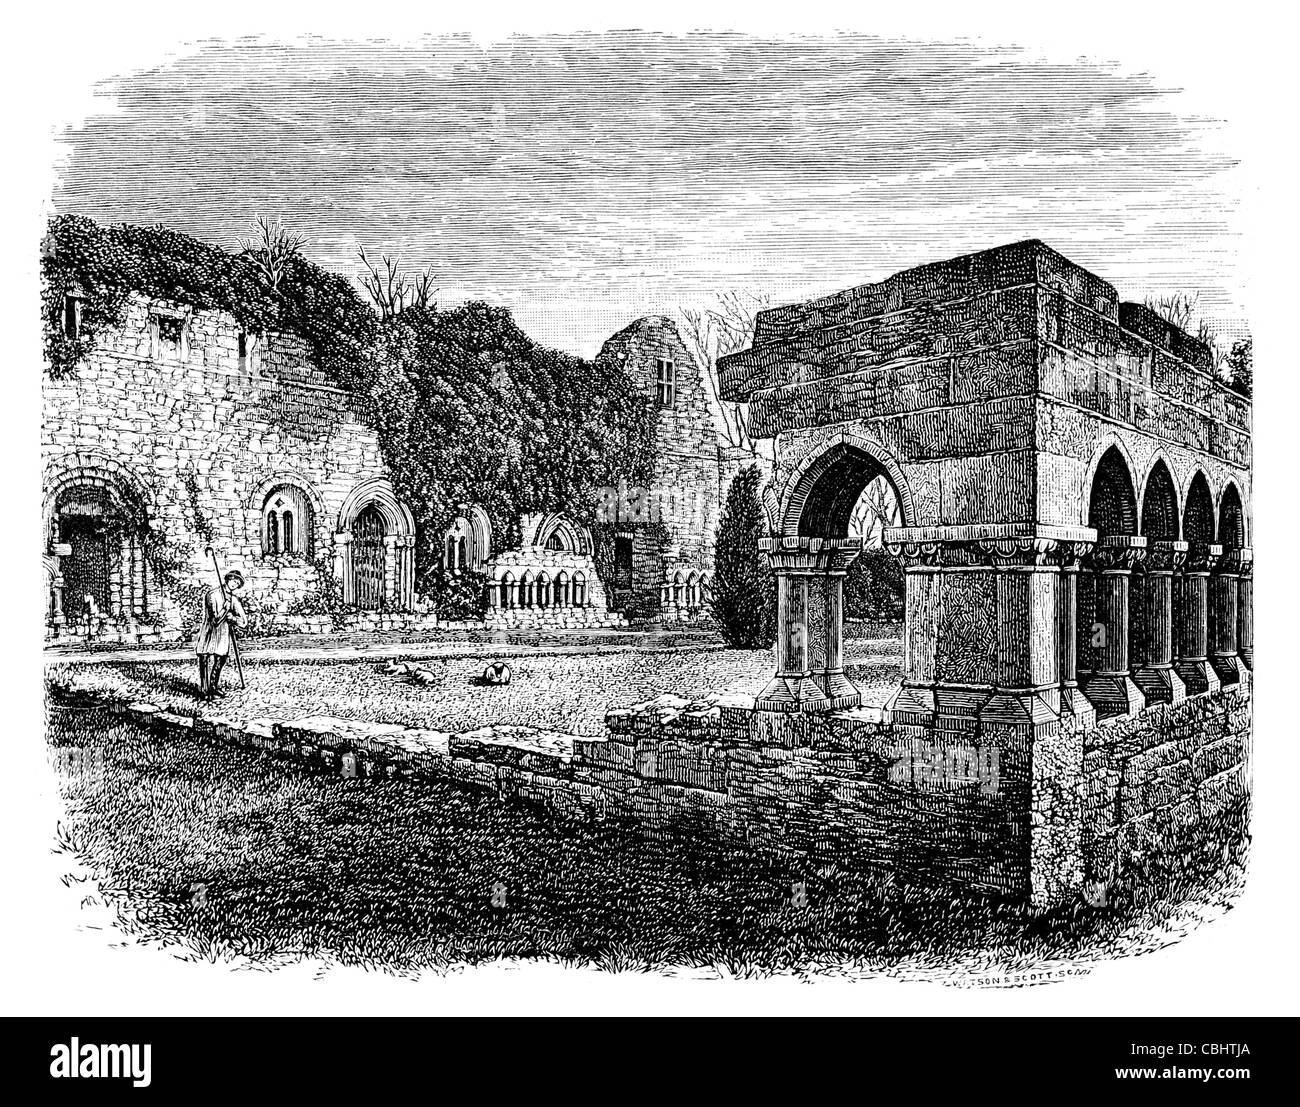 Cong Abbey, die historischen Galway-Mayo Irland Connacht 7.Jahrhundert Saint Feichin Ruine Ruinen zerstört Kapelle Kirchenschiff Kloster Stockfoto